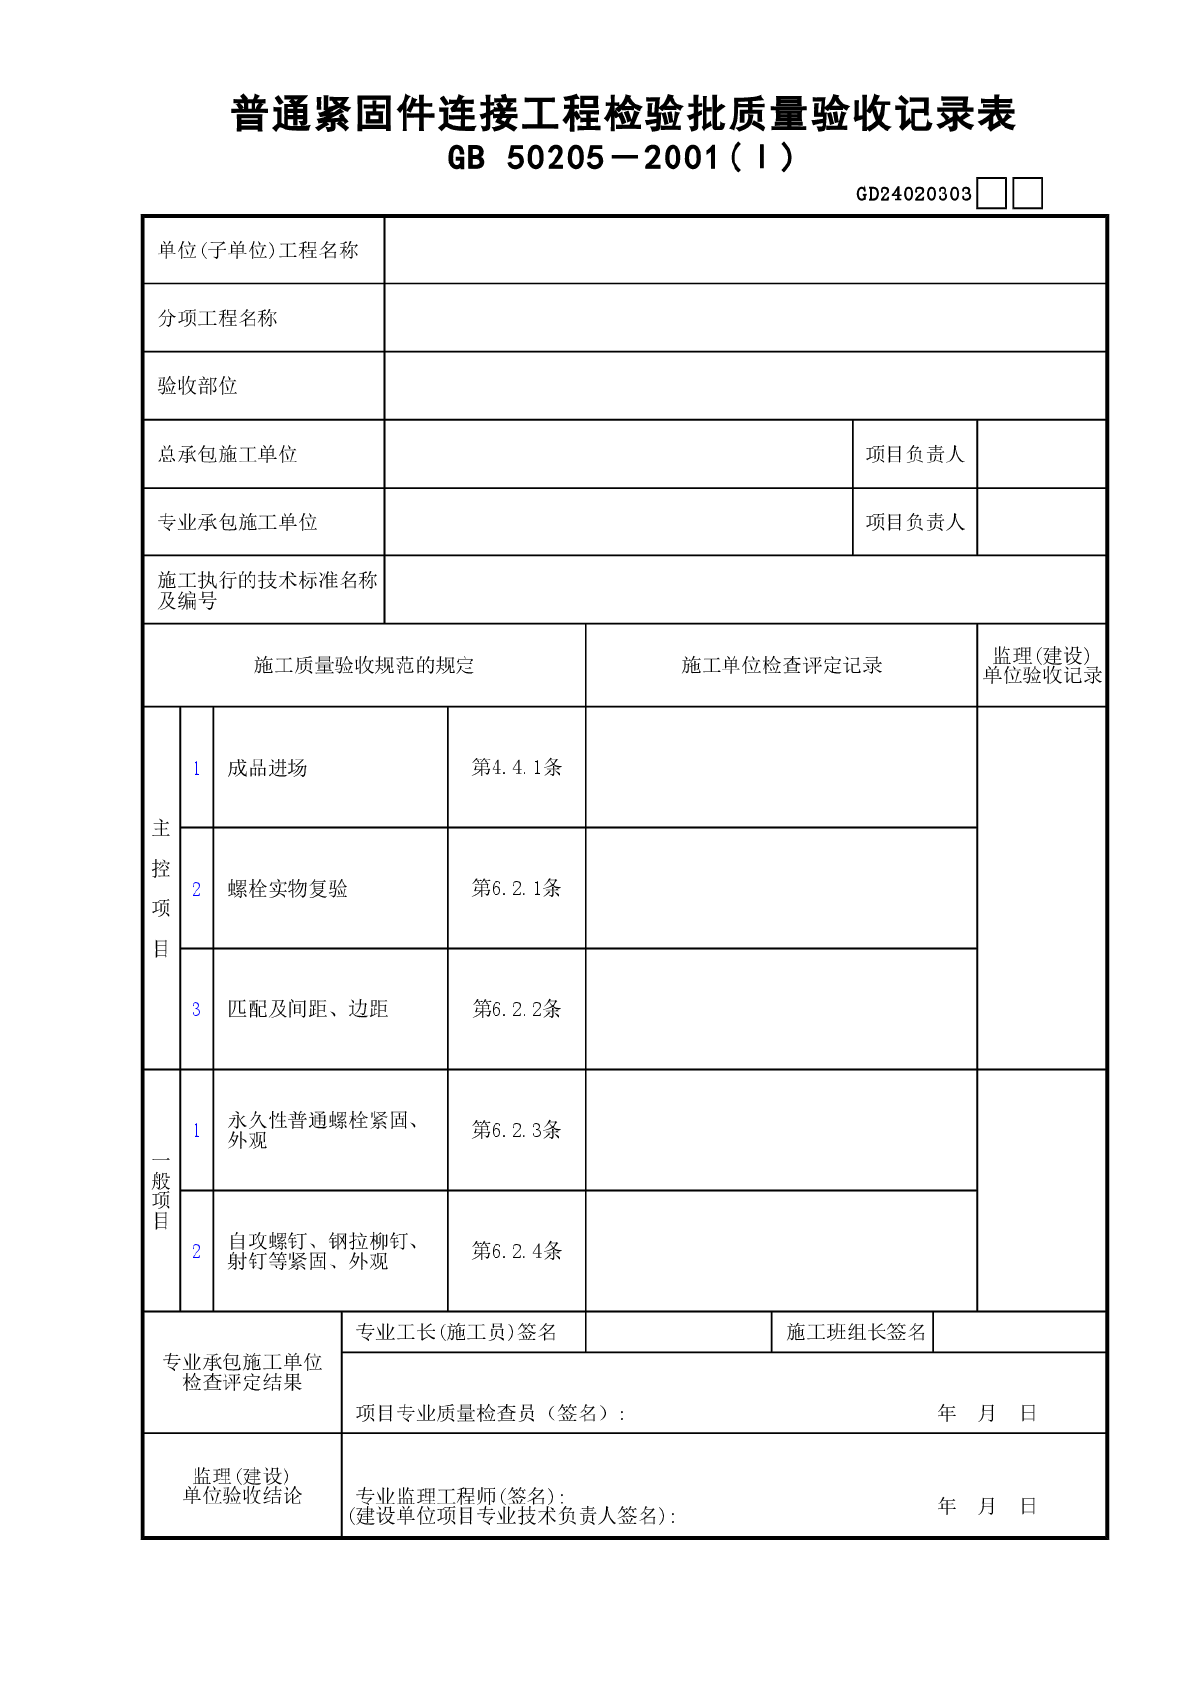 03普通紧固件连接工程检验批质量验收记录表(Ⅰ)GD24020303